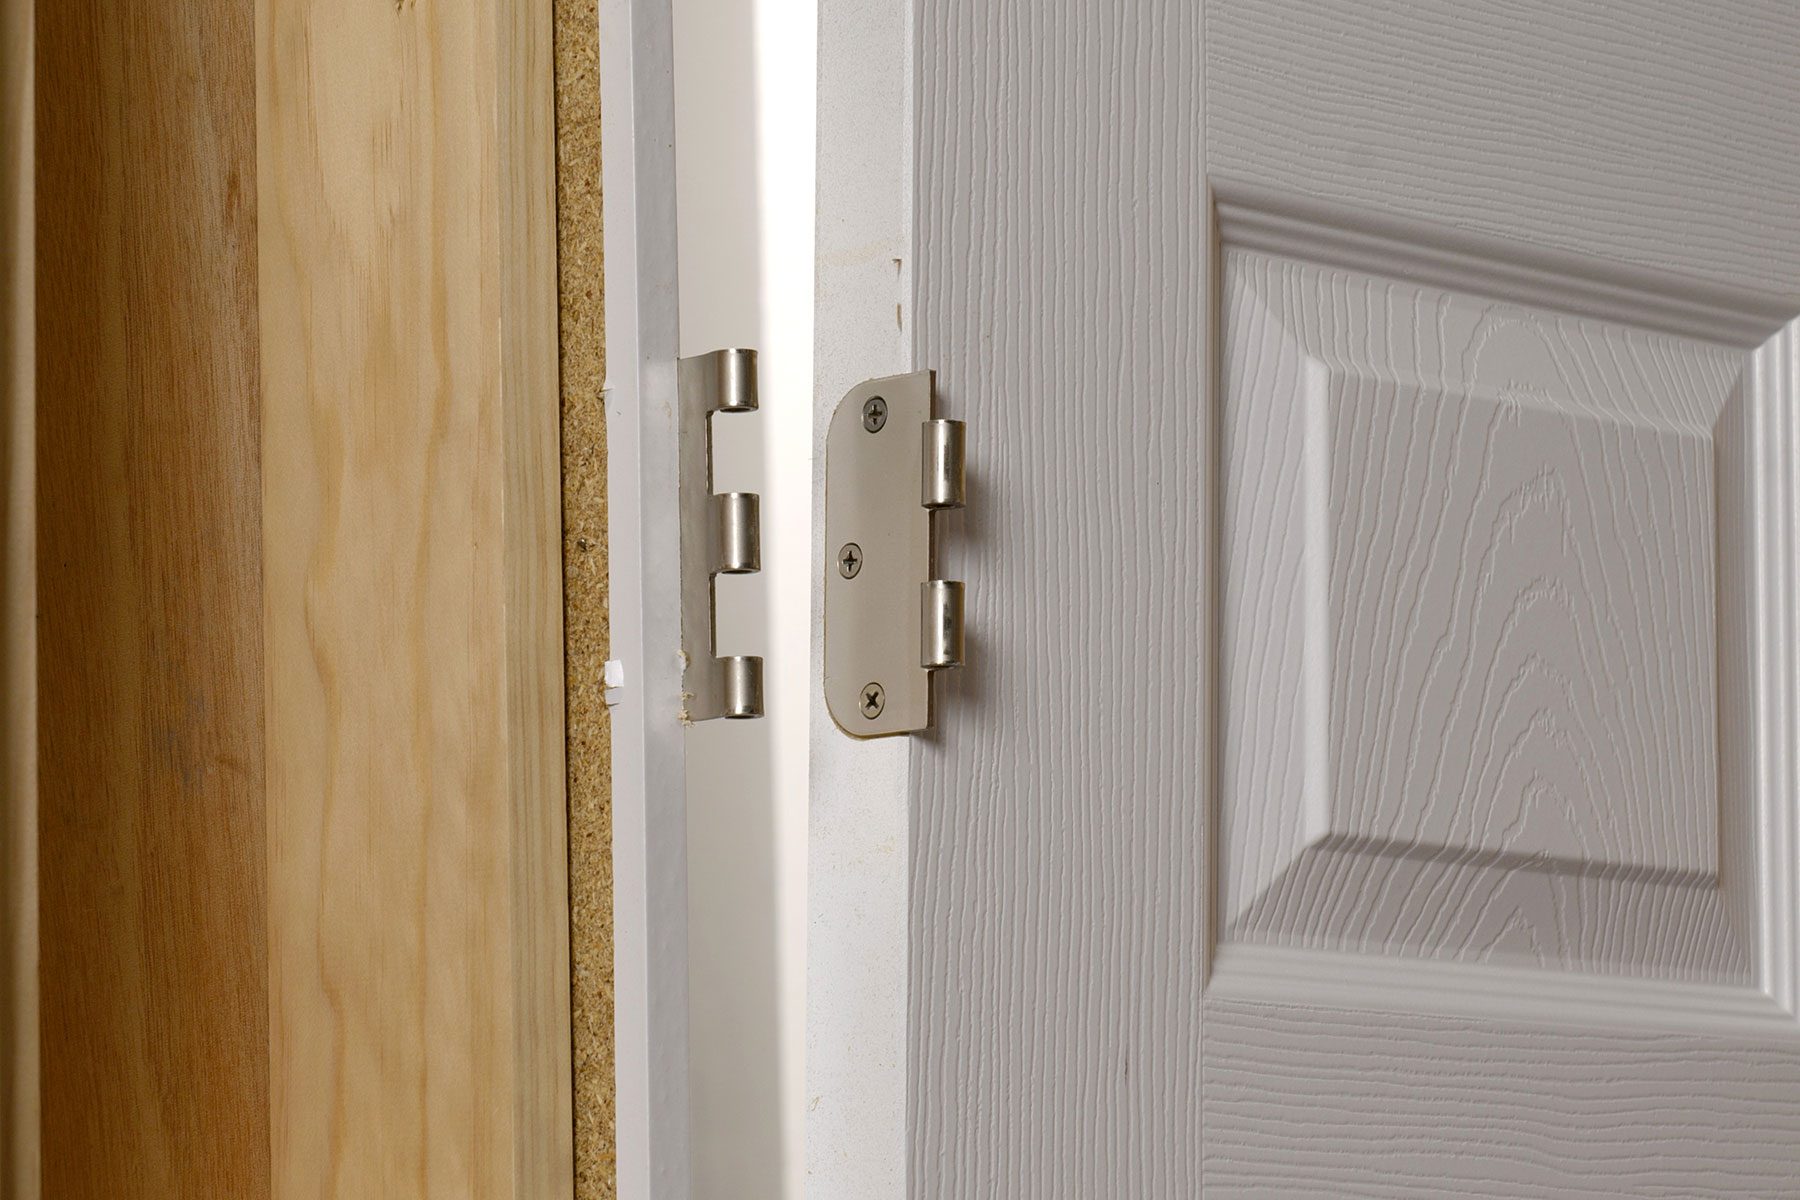 How to take a door off its hinges & how to hang a door